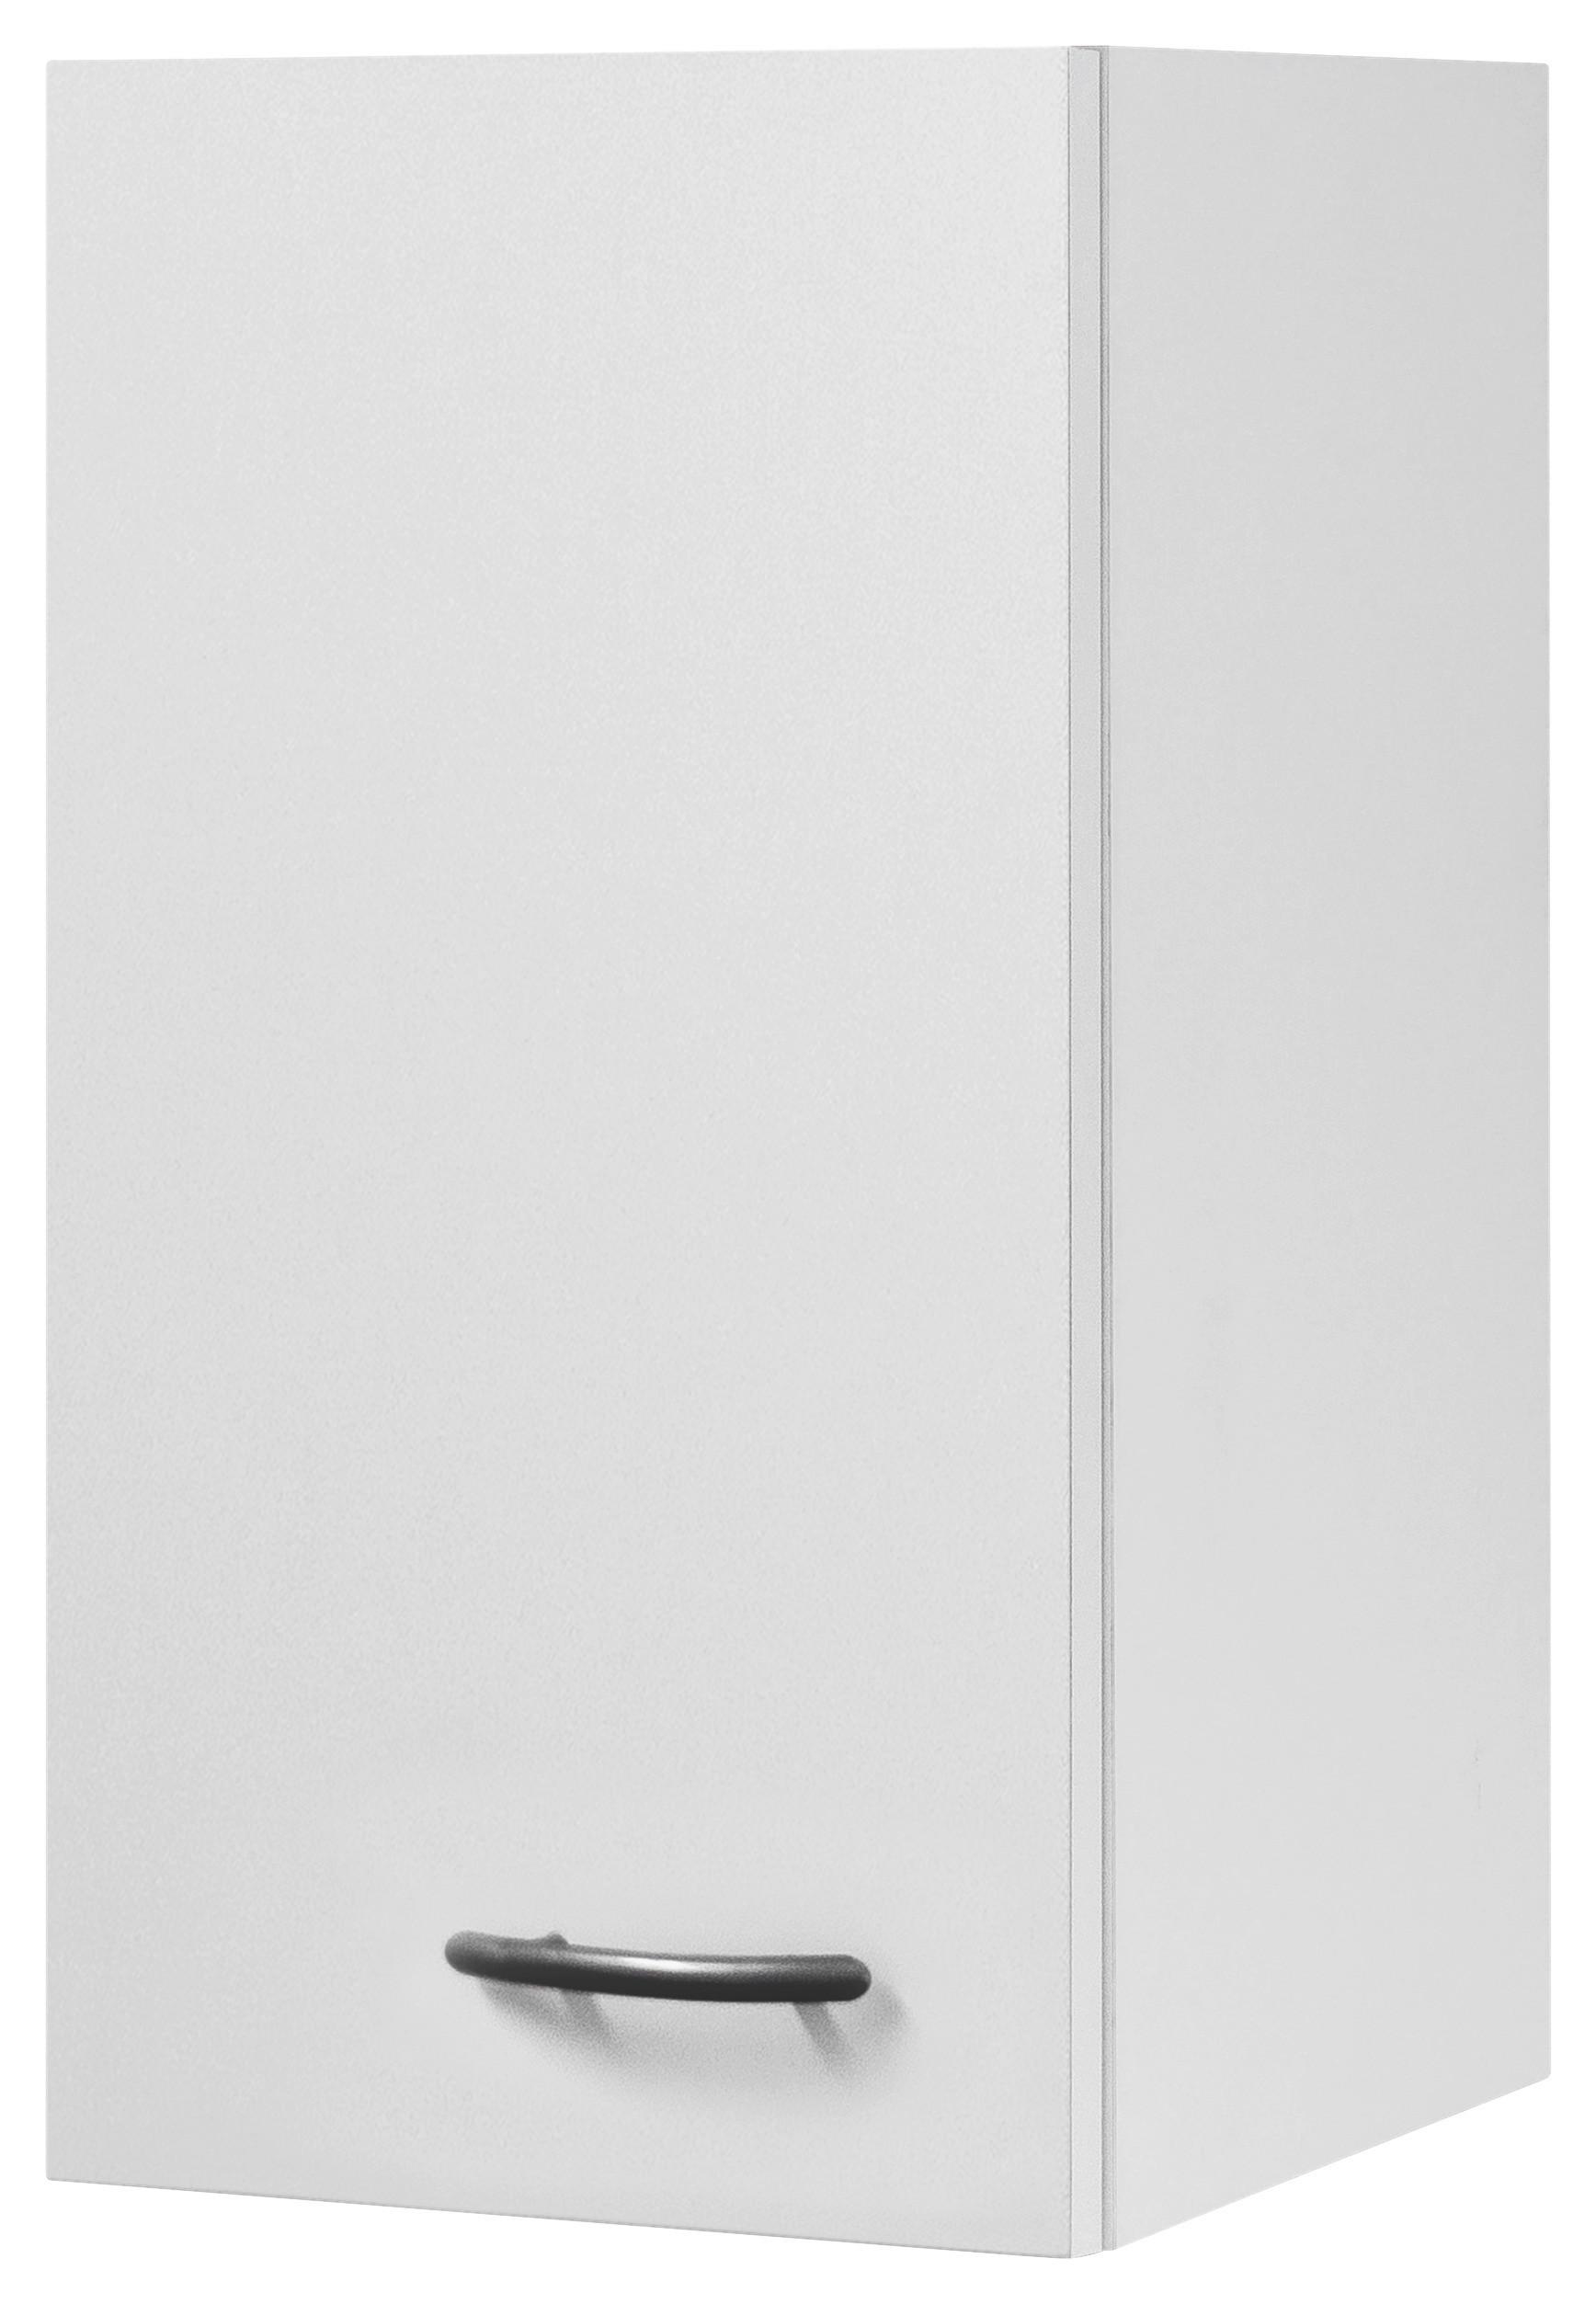 Küchenoberschrank in Weiss 'Wito' - Weiß, Holzwerkstoff (30/54/32cm) - MID.YOU